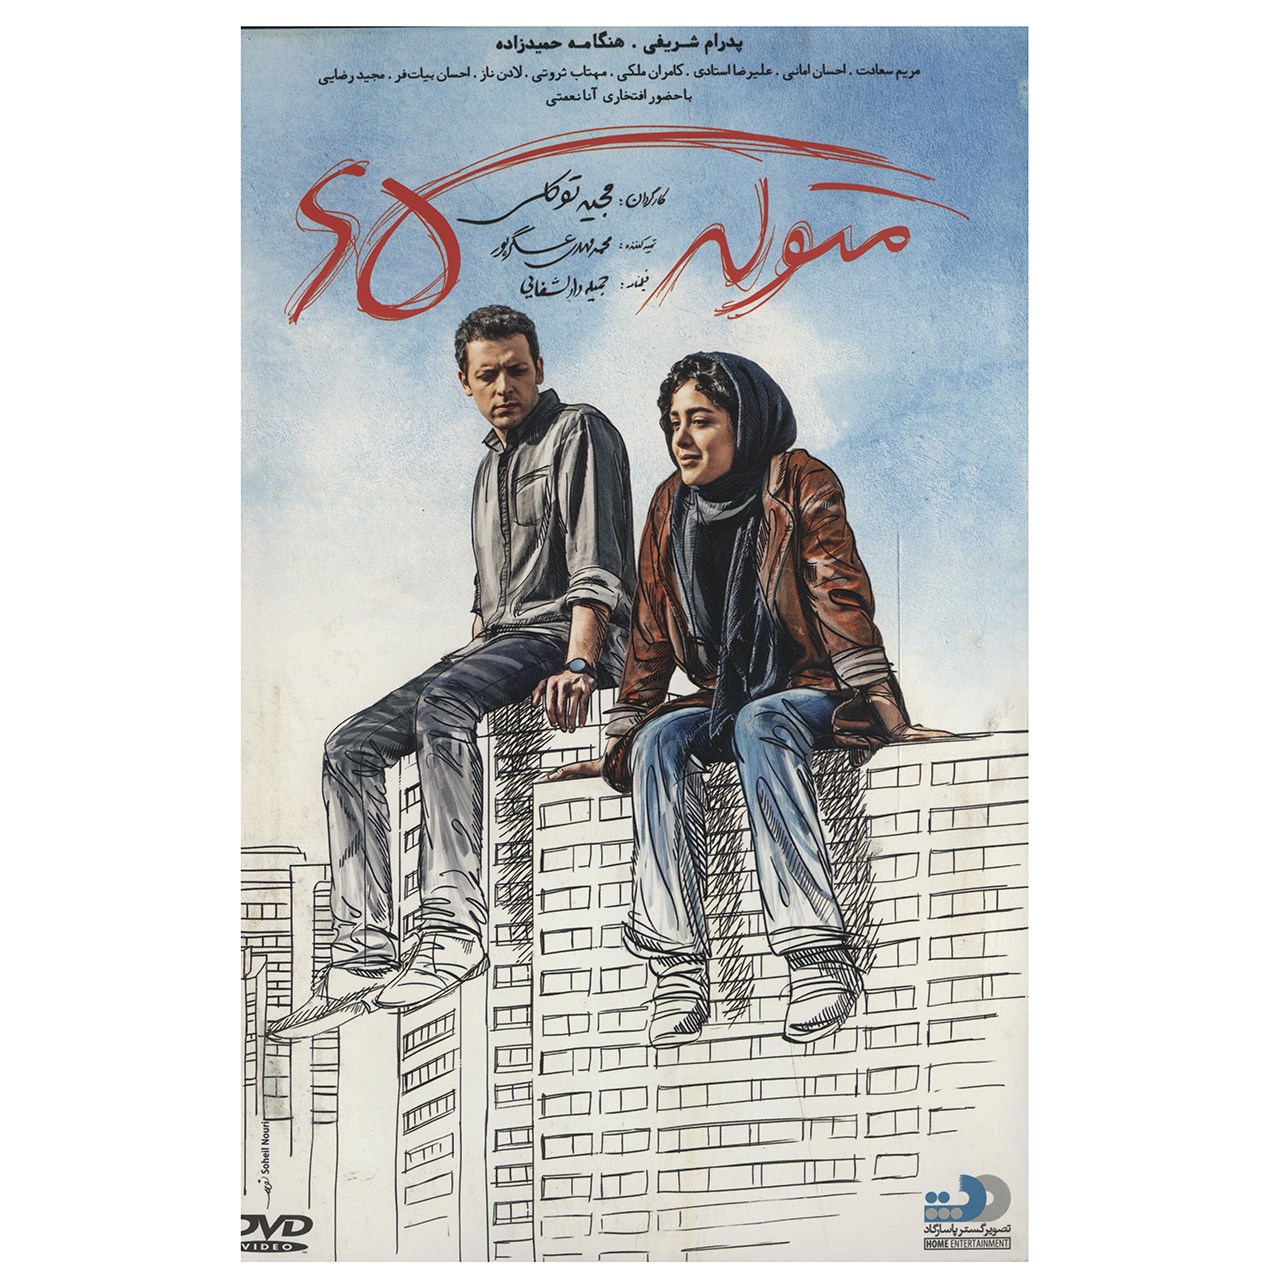 فیلم سینمایی متولد 65 اثر مجید توکلی